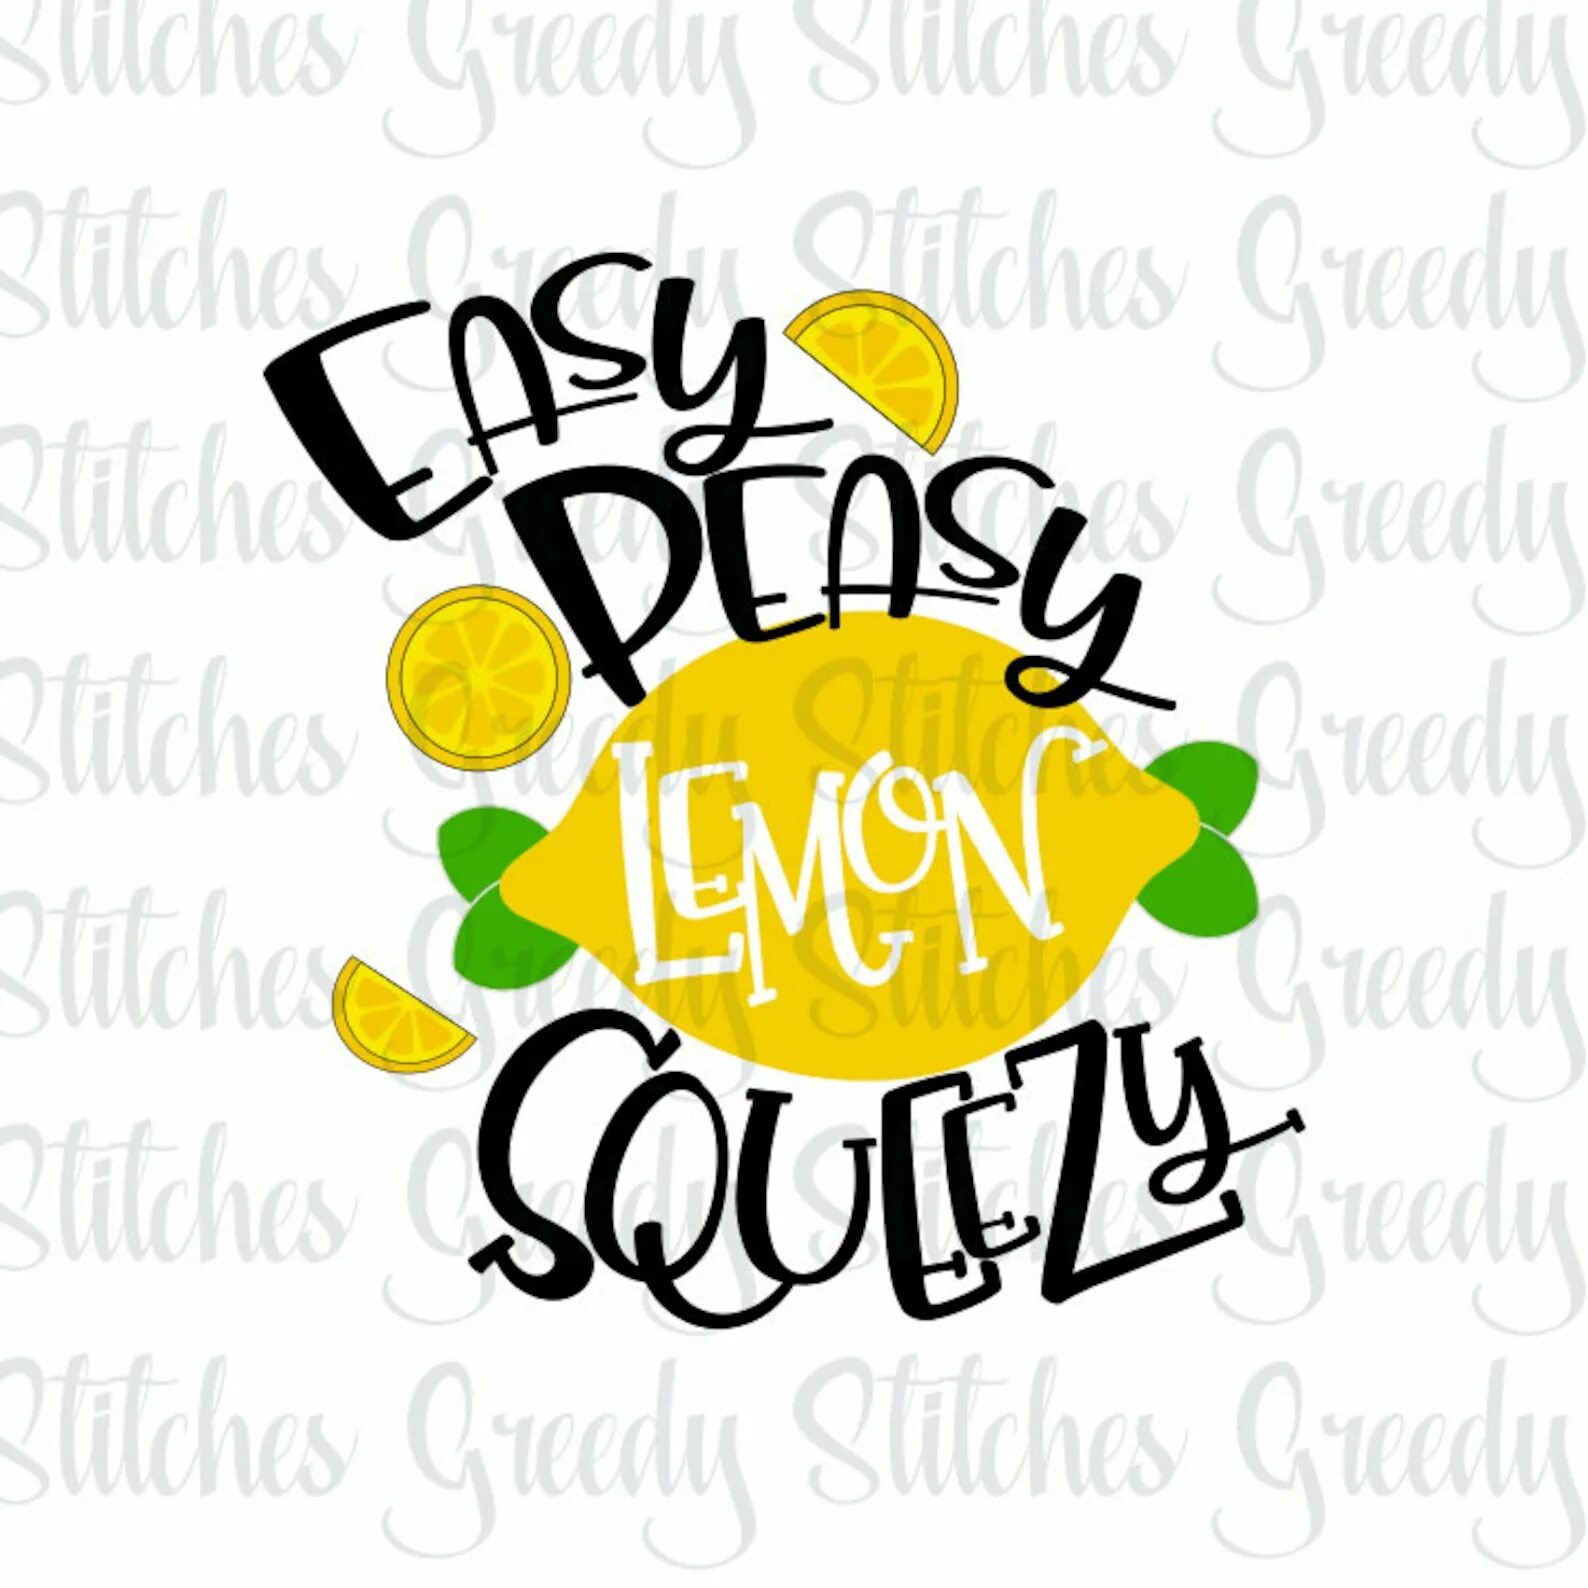 Peasy Lemon Squeezy. Easy Peasy. ИЗИ пищи Лаймон сквизи. Перевести easy Peasy Lemon Squeezy. Easy peasy lemon